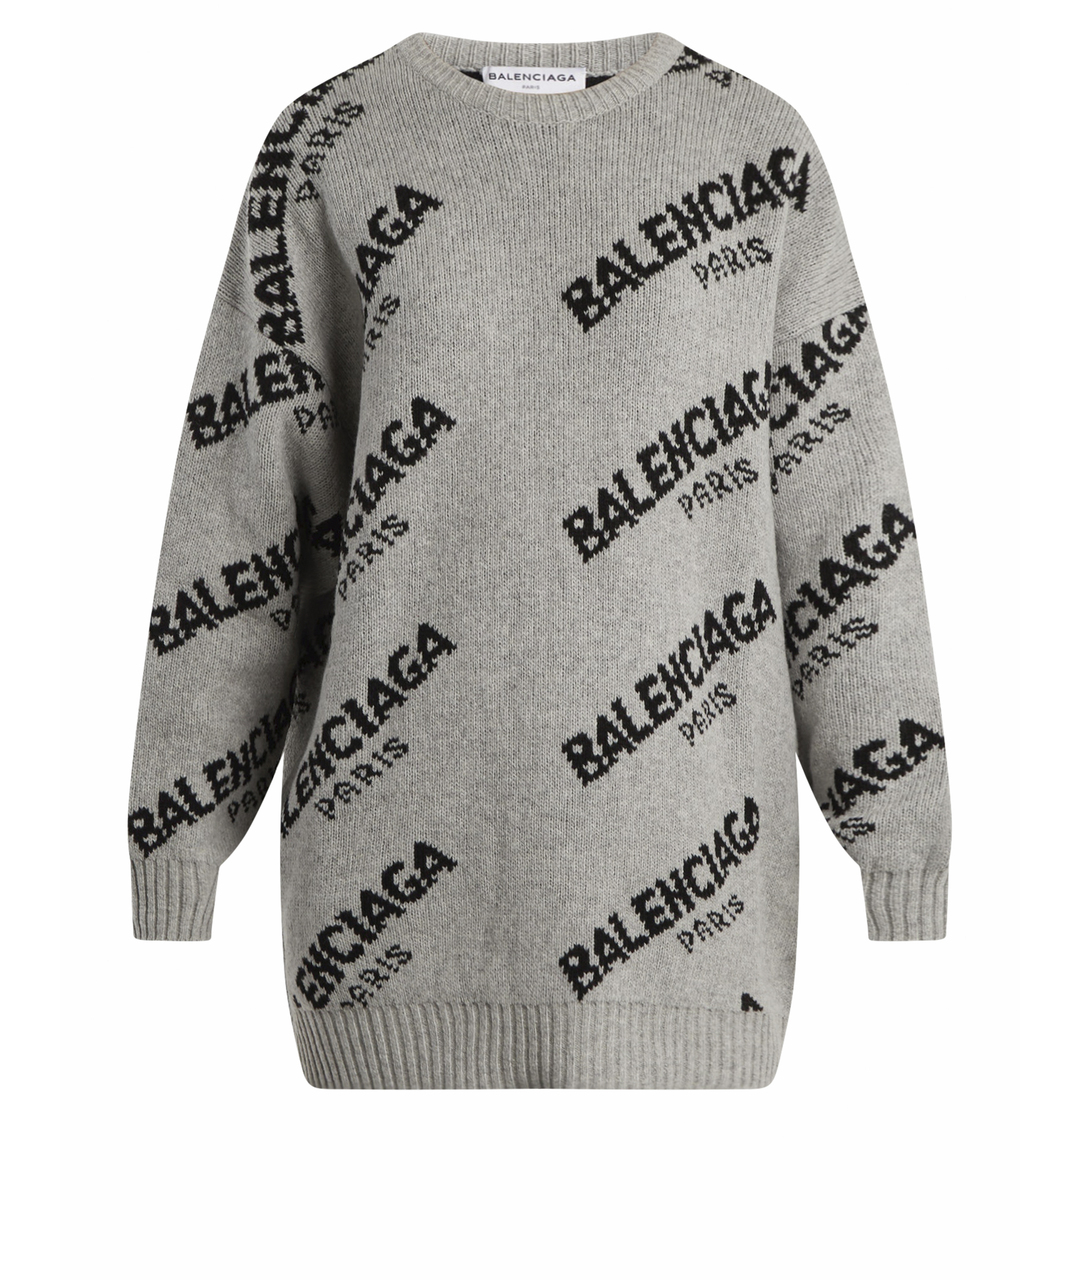 BALENCIAGA Серый шерстяной джемпер / свитер, фото 1